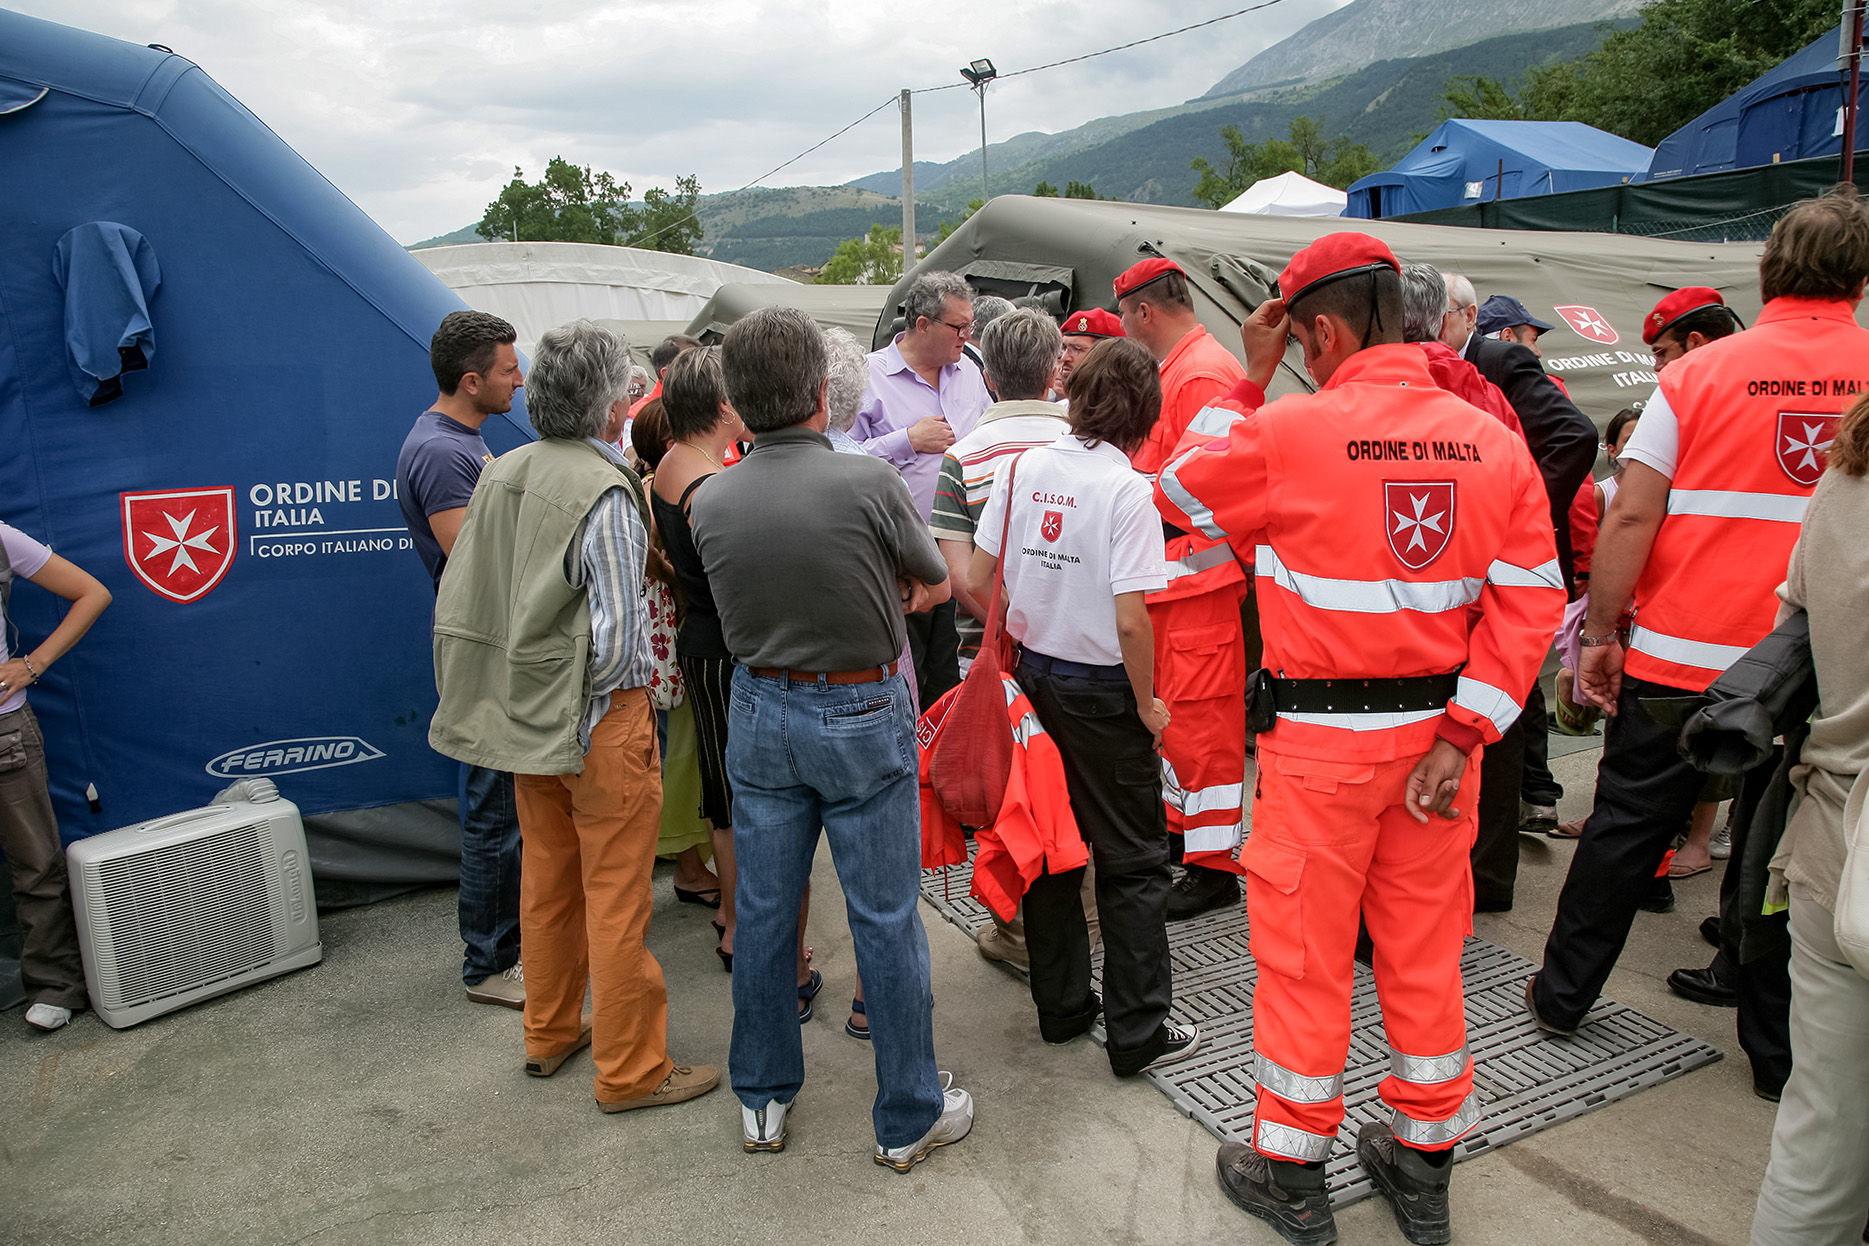 Abruzzo: The Grand Master returns to the quake victims